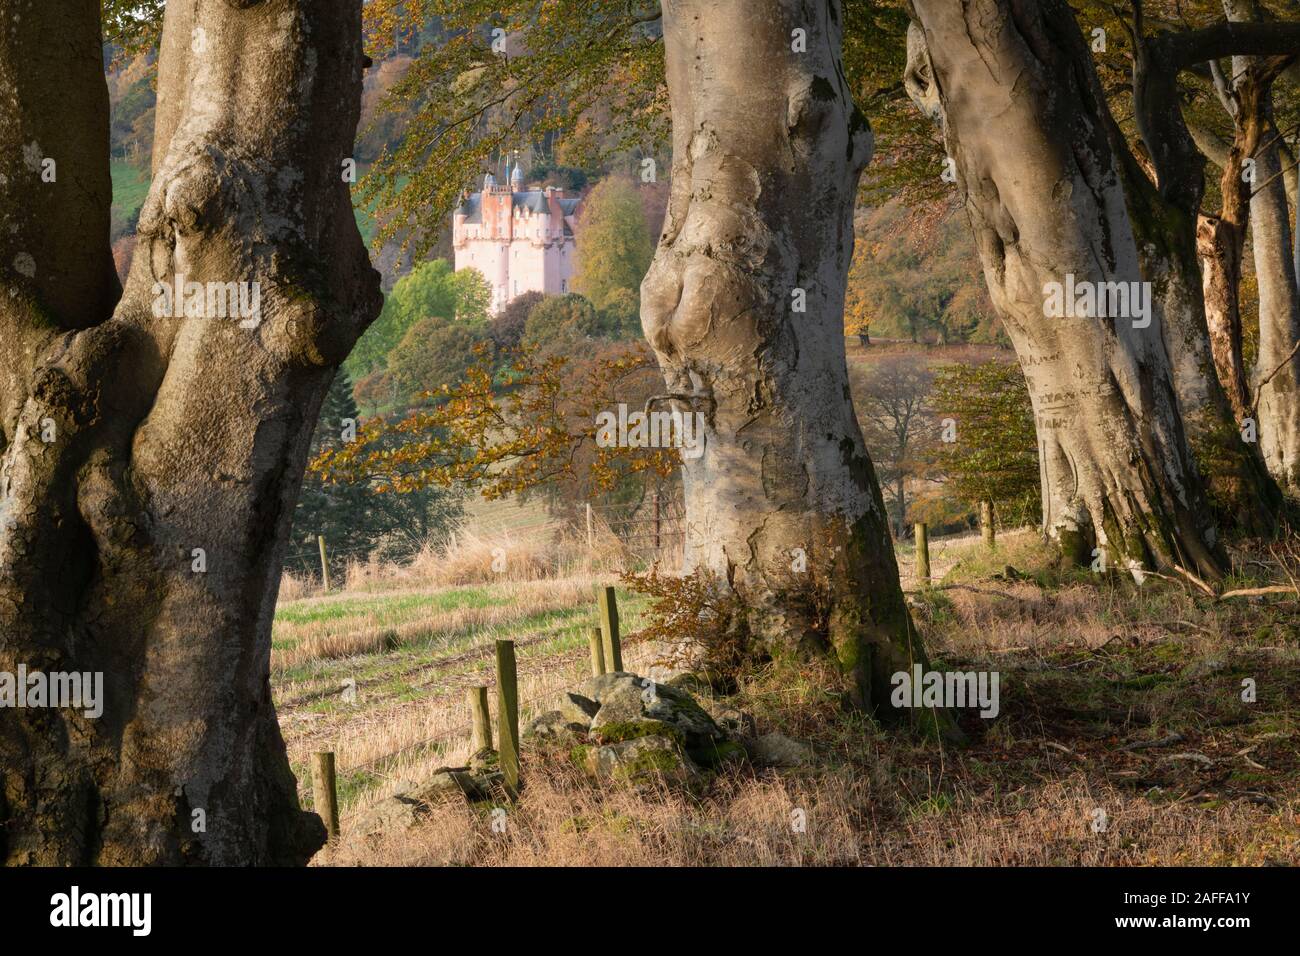 Le château écossais rose à Craigievar comme vu à travers une ligne de hêtres (Fagus sylvatica) de forestiers adjacents à l'automne Banque D'Images